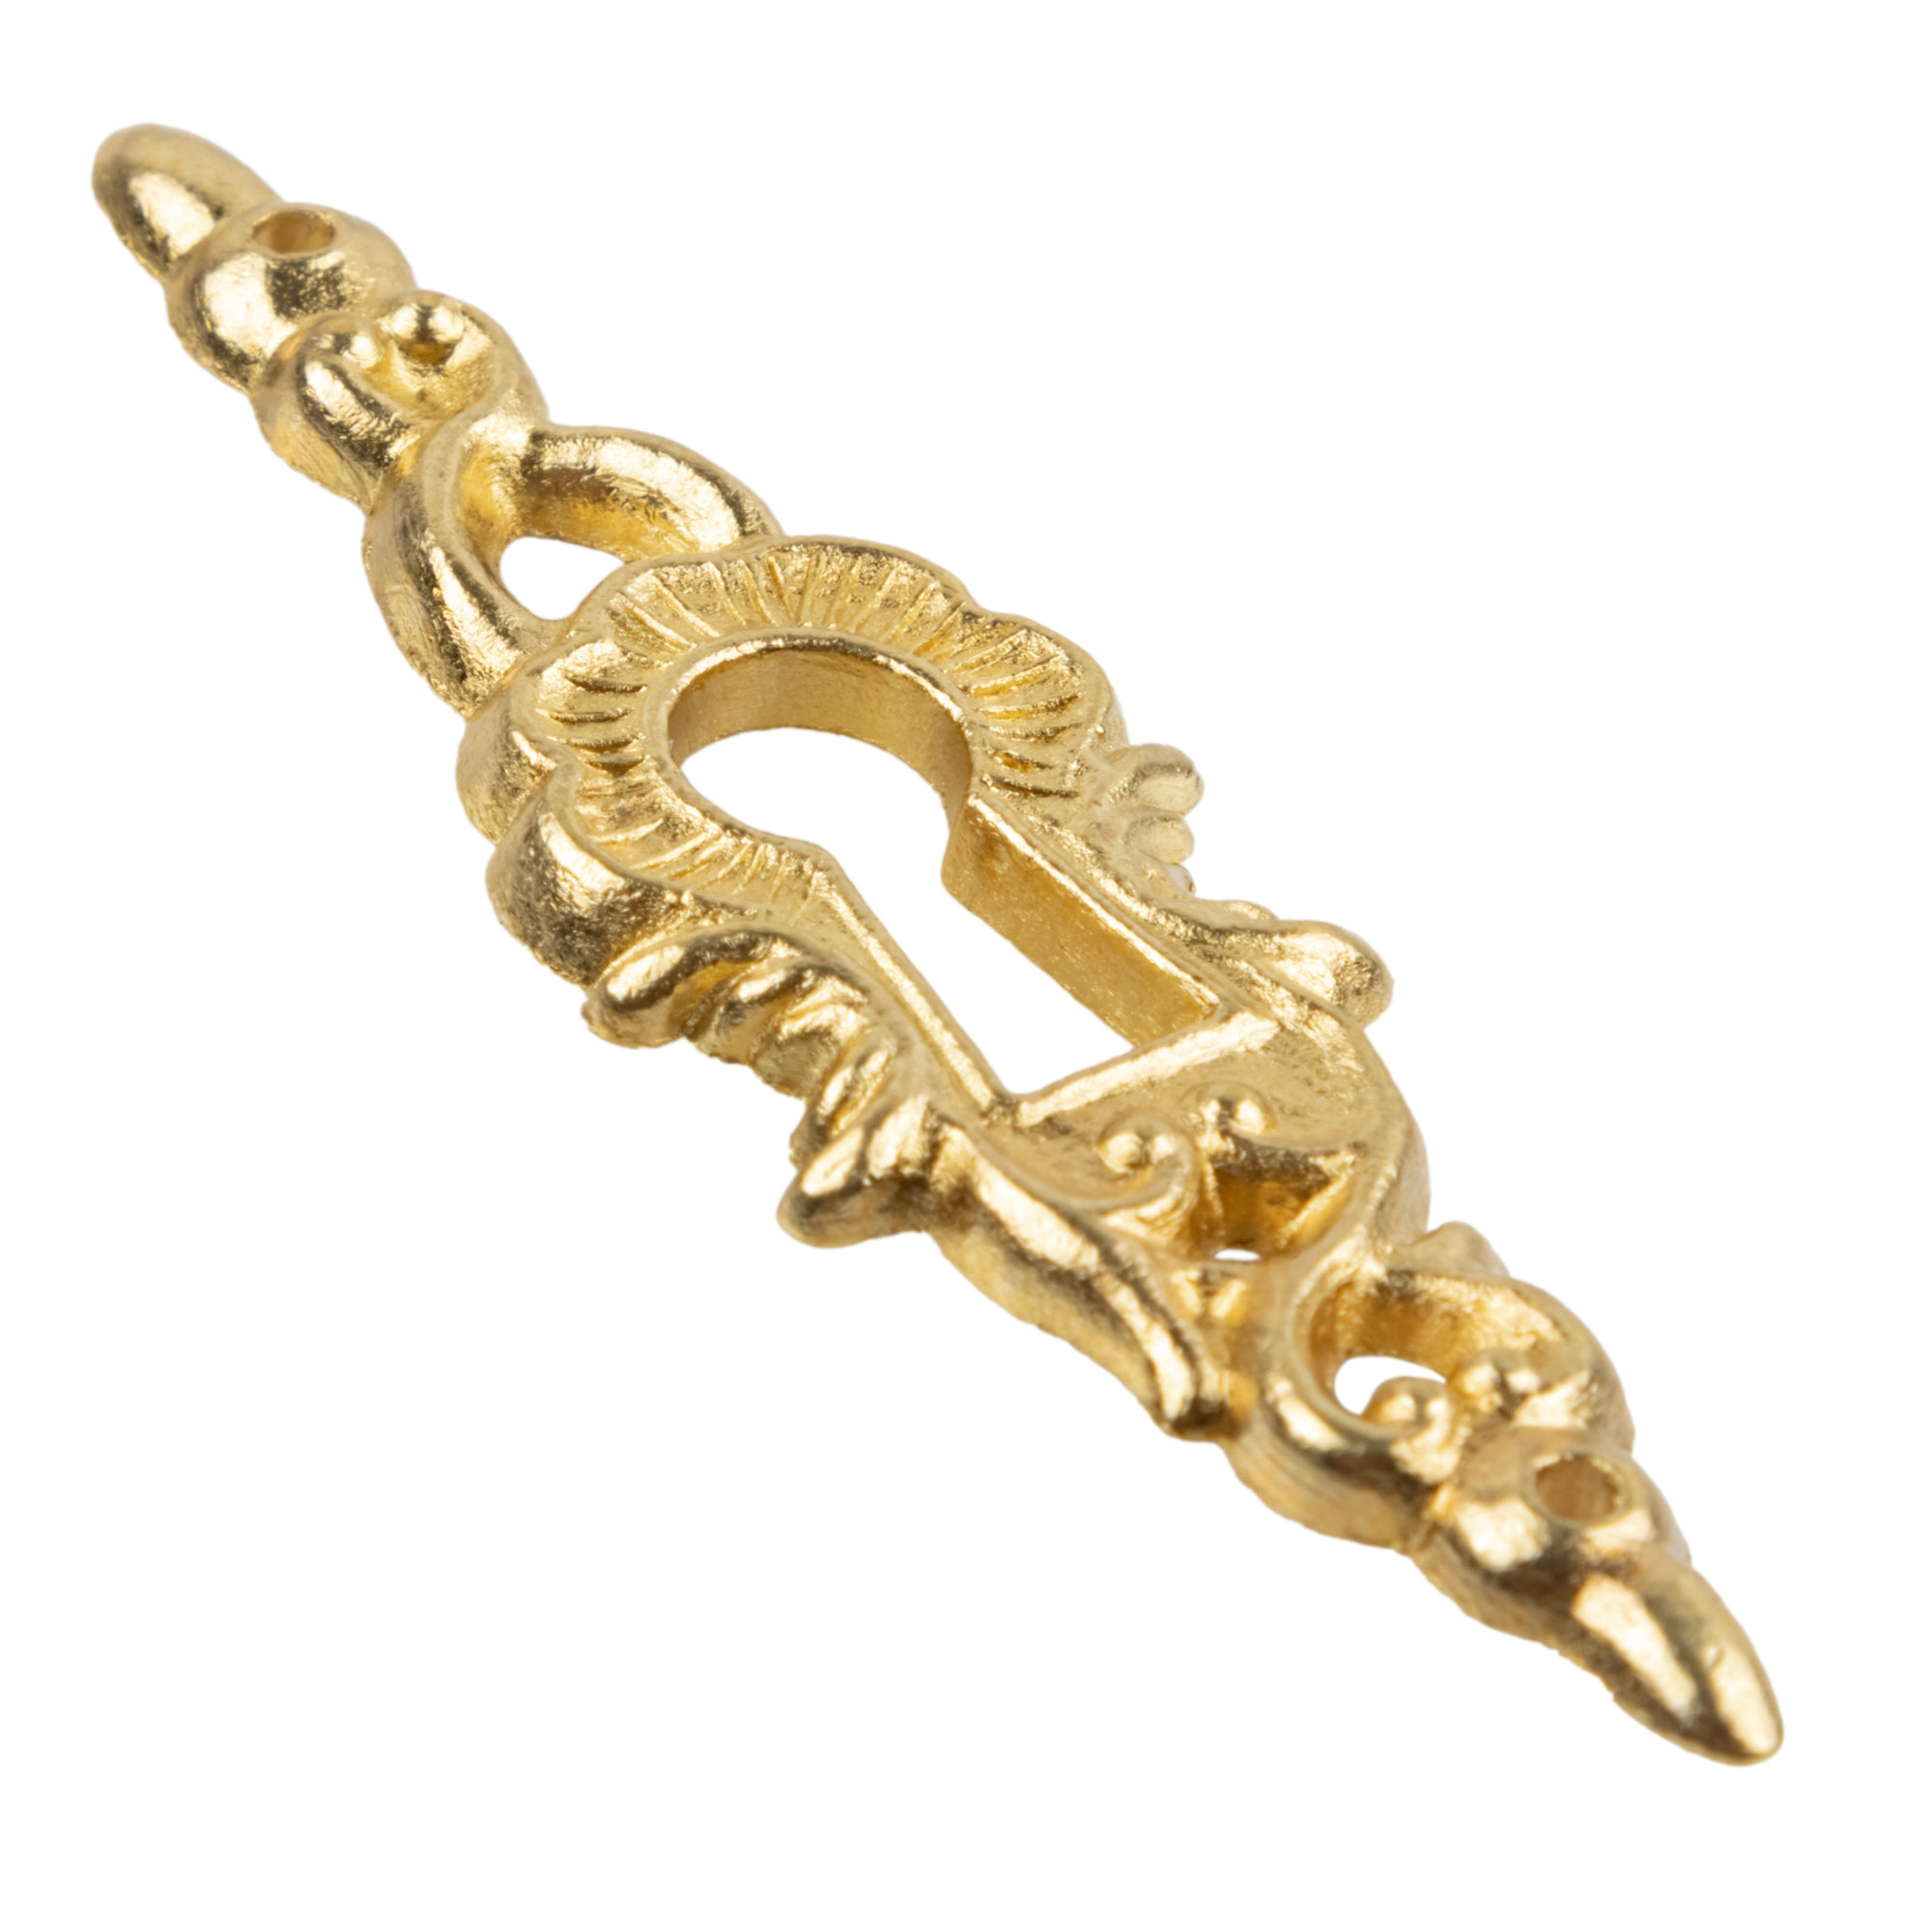  UNIQANTIQ HARDWARE SUPPLY Victorian Double Solid Brass